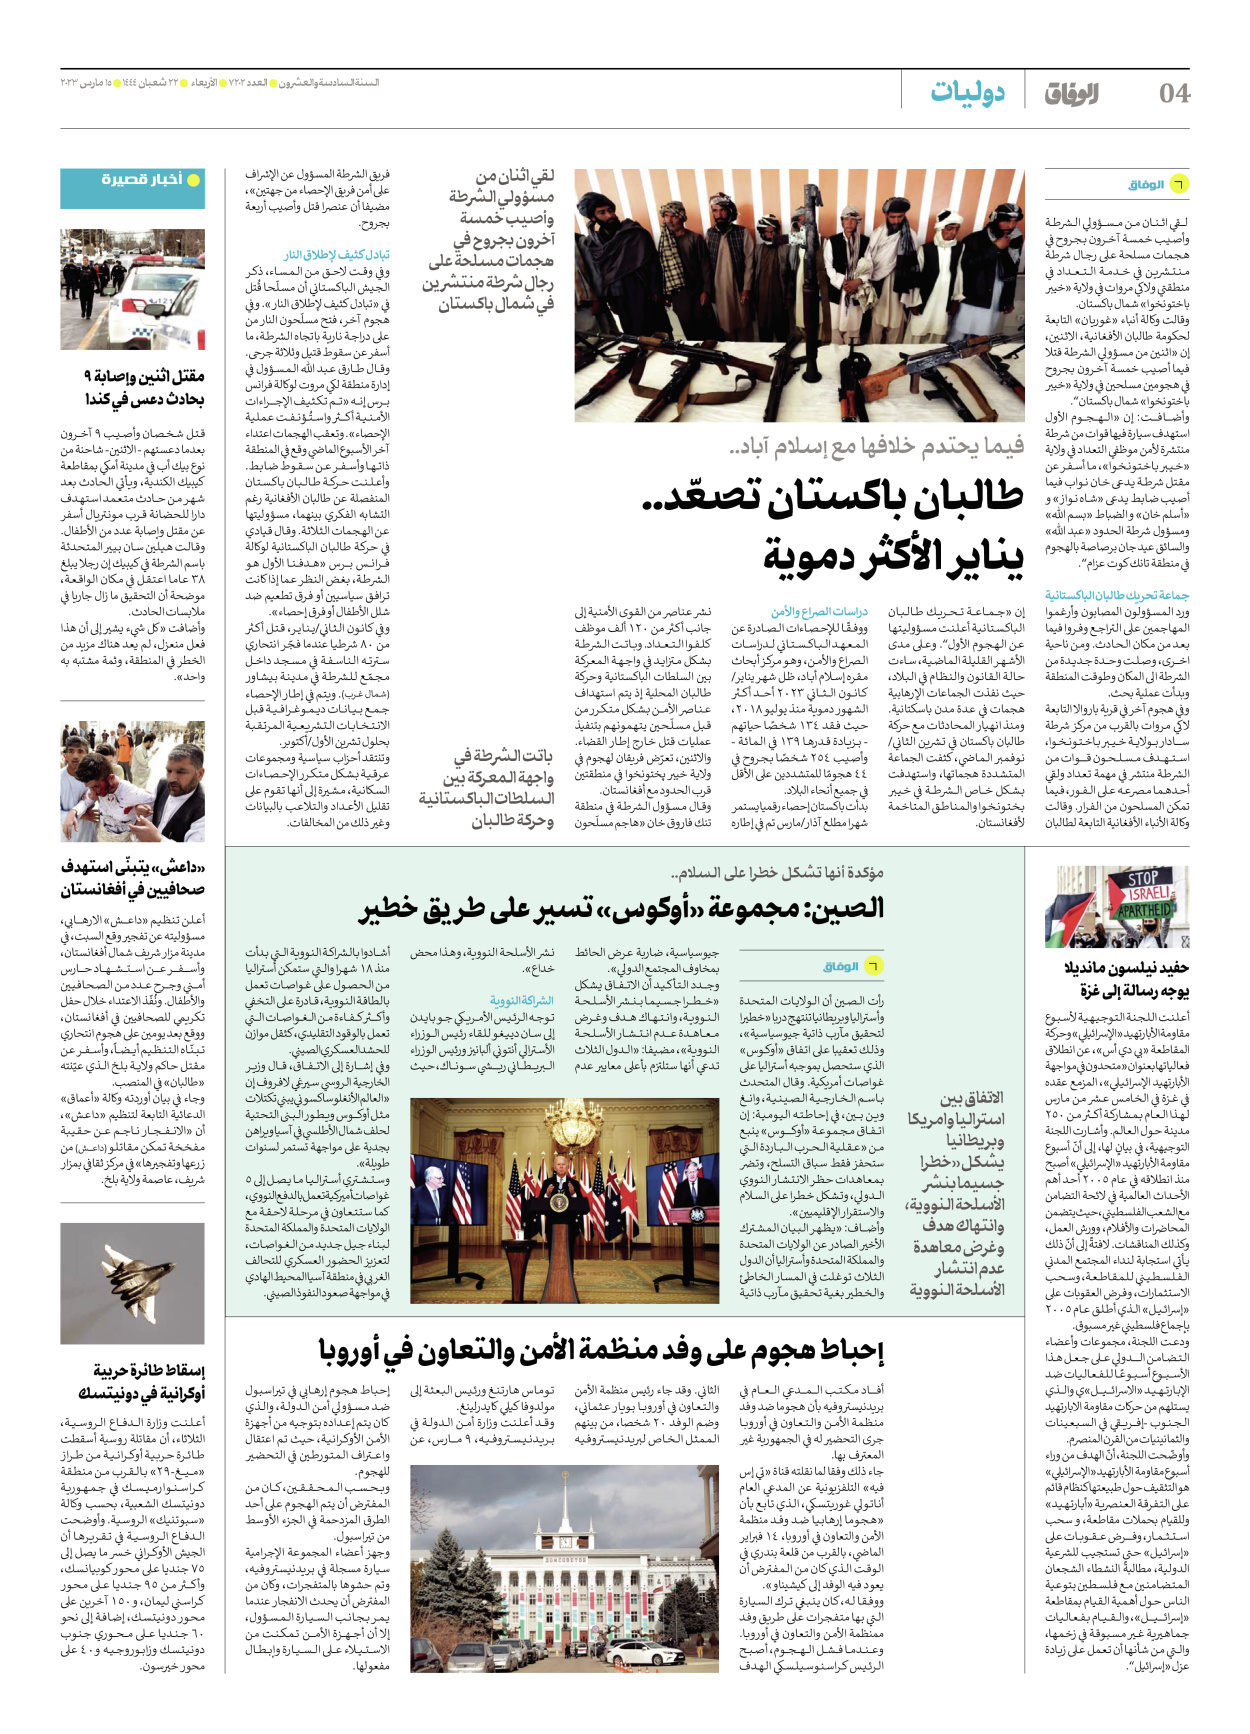 صحیفة ایران الدولیة الوفاق - العدد سبعة آلاف ومائتان واثنان - ١٥ مارس ٢٠٢٣ - الصفحة ٤